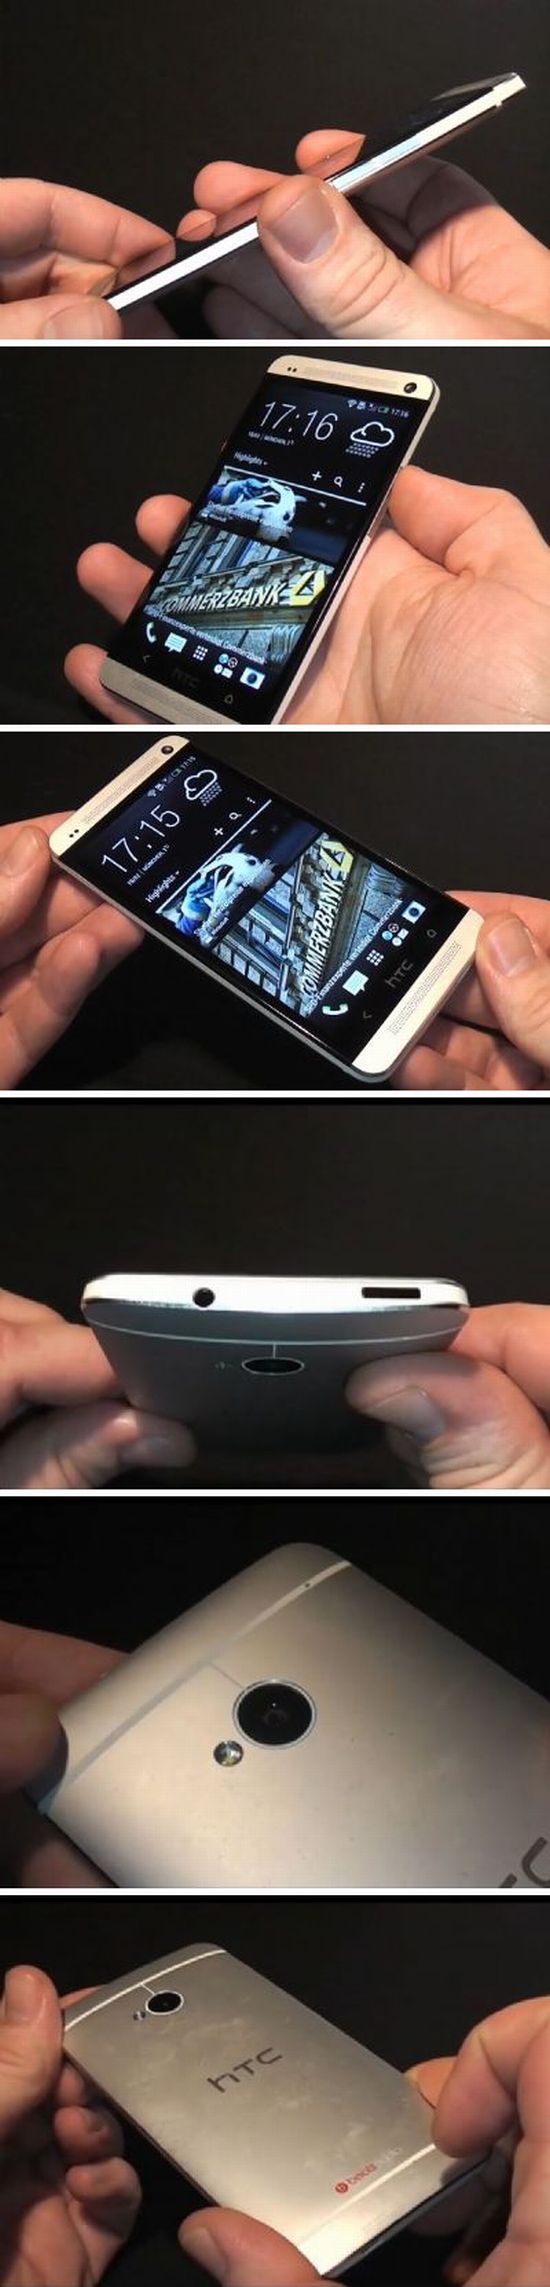 HTC One: órákkal a bemutató előtt...